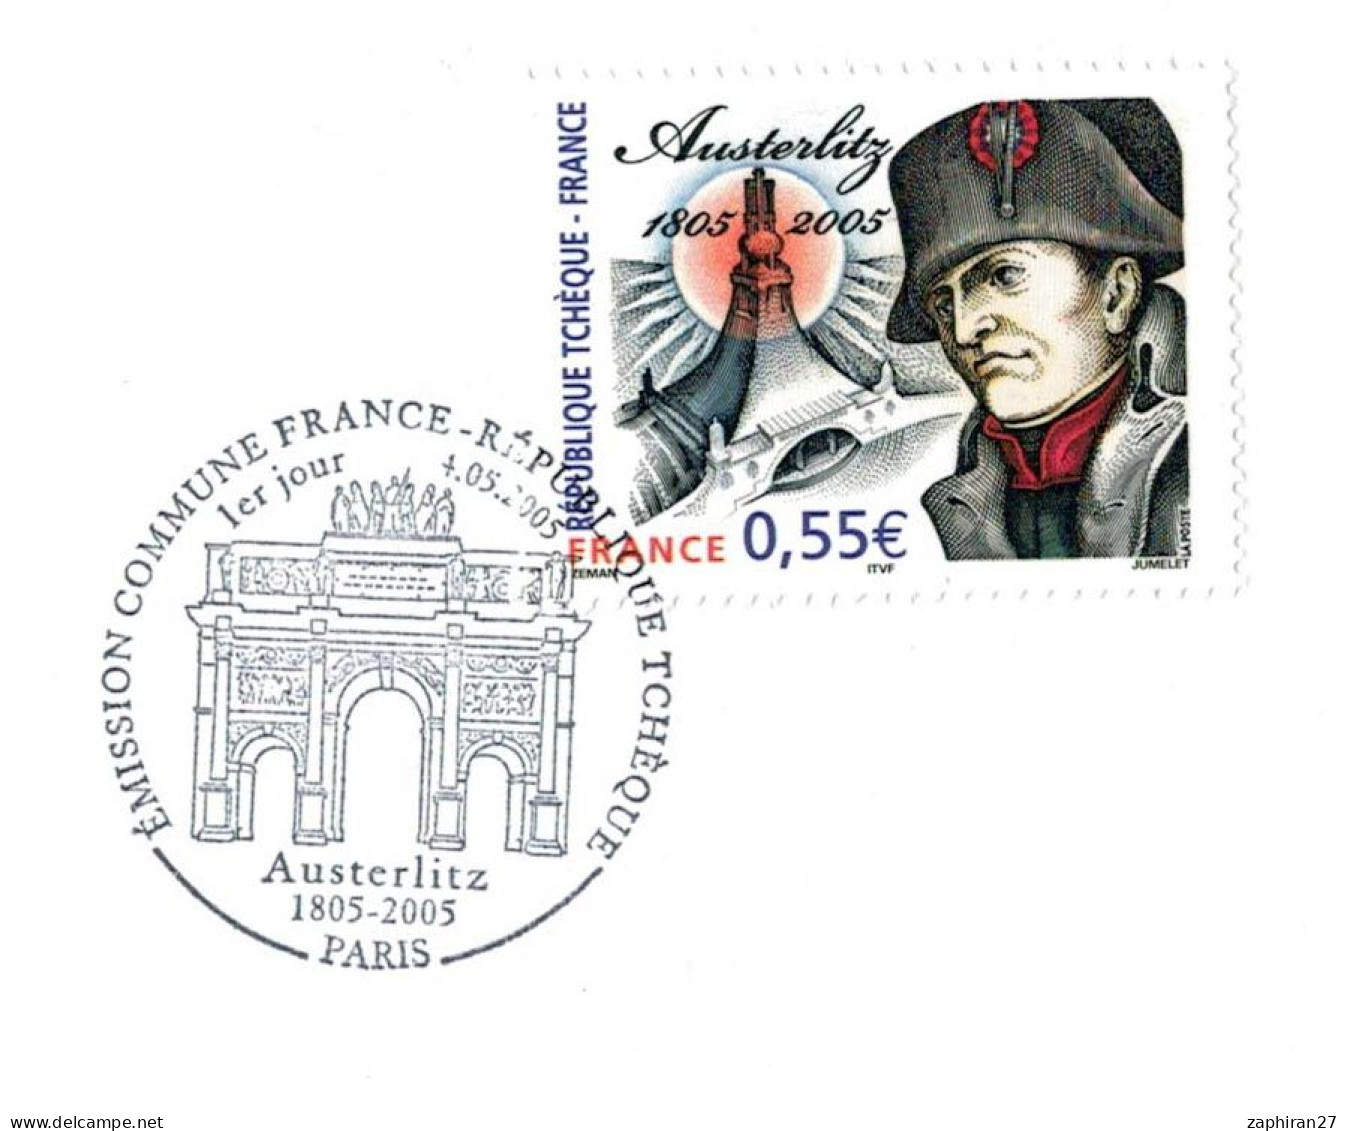 PARIS EMISSION COMMUNE FRACE - REPUBLIQUE TCHEQUE NAPOLEON AUSTERLITZ 1805/2005 (4-5-2005) #414# - Napoleón